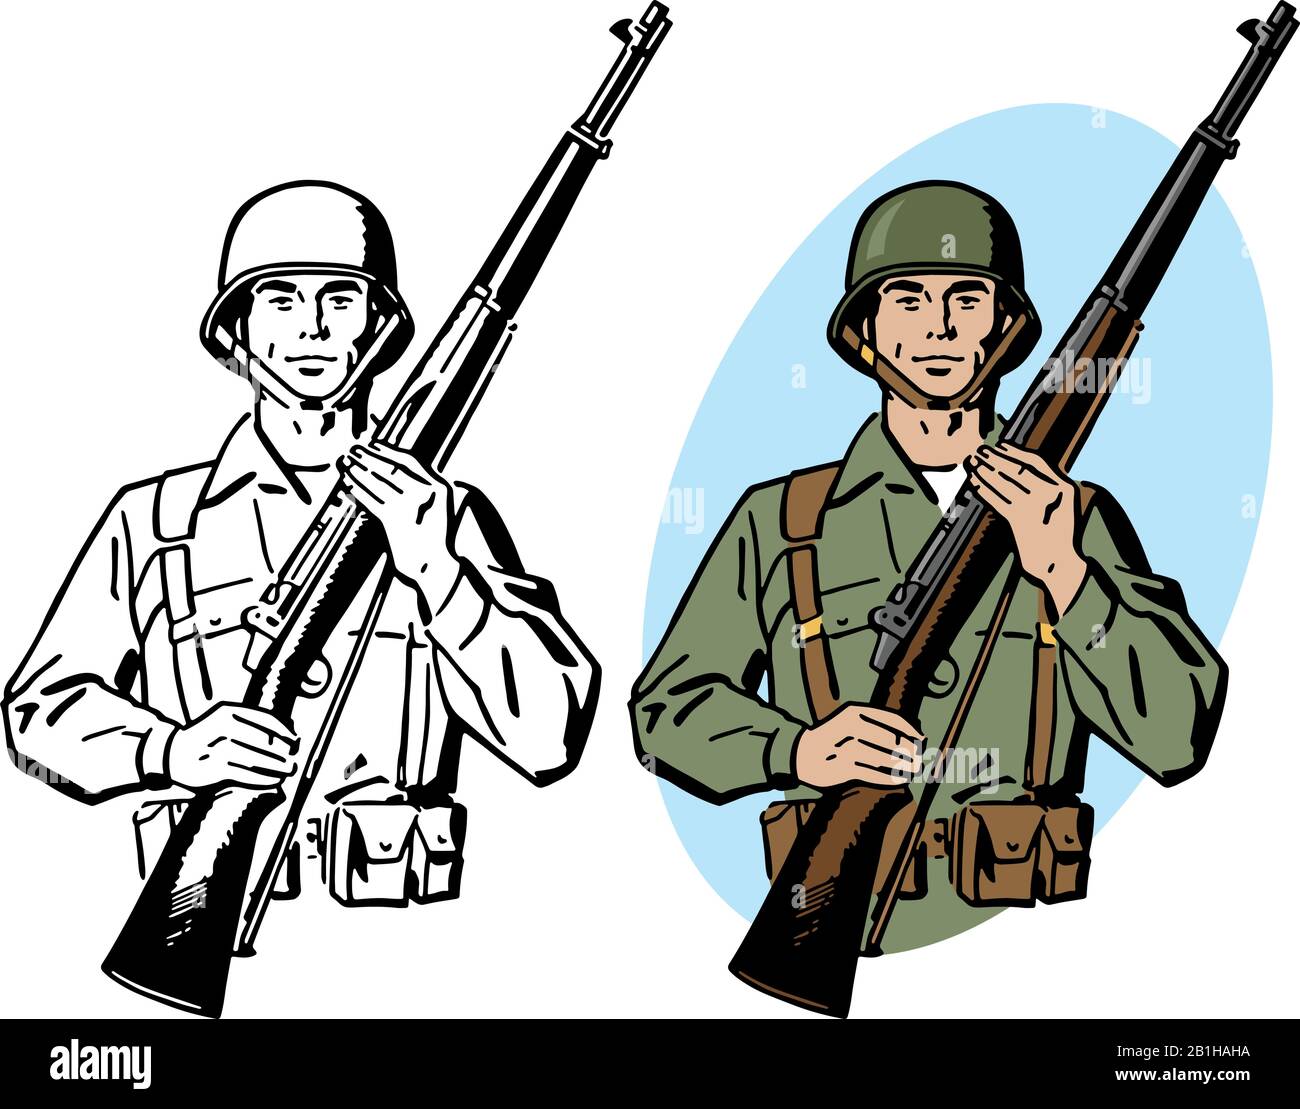 Eine Zeichnung eines Soldaten der amerikanischen Armee aus der Zeit des zweiten Weltkriegs, der ein Gewehr hält. Stock Vektor